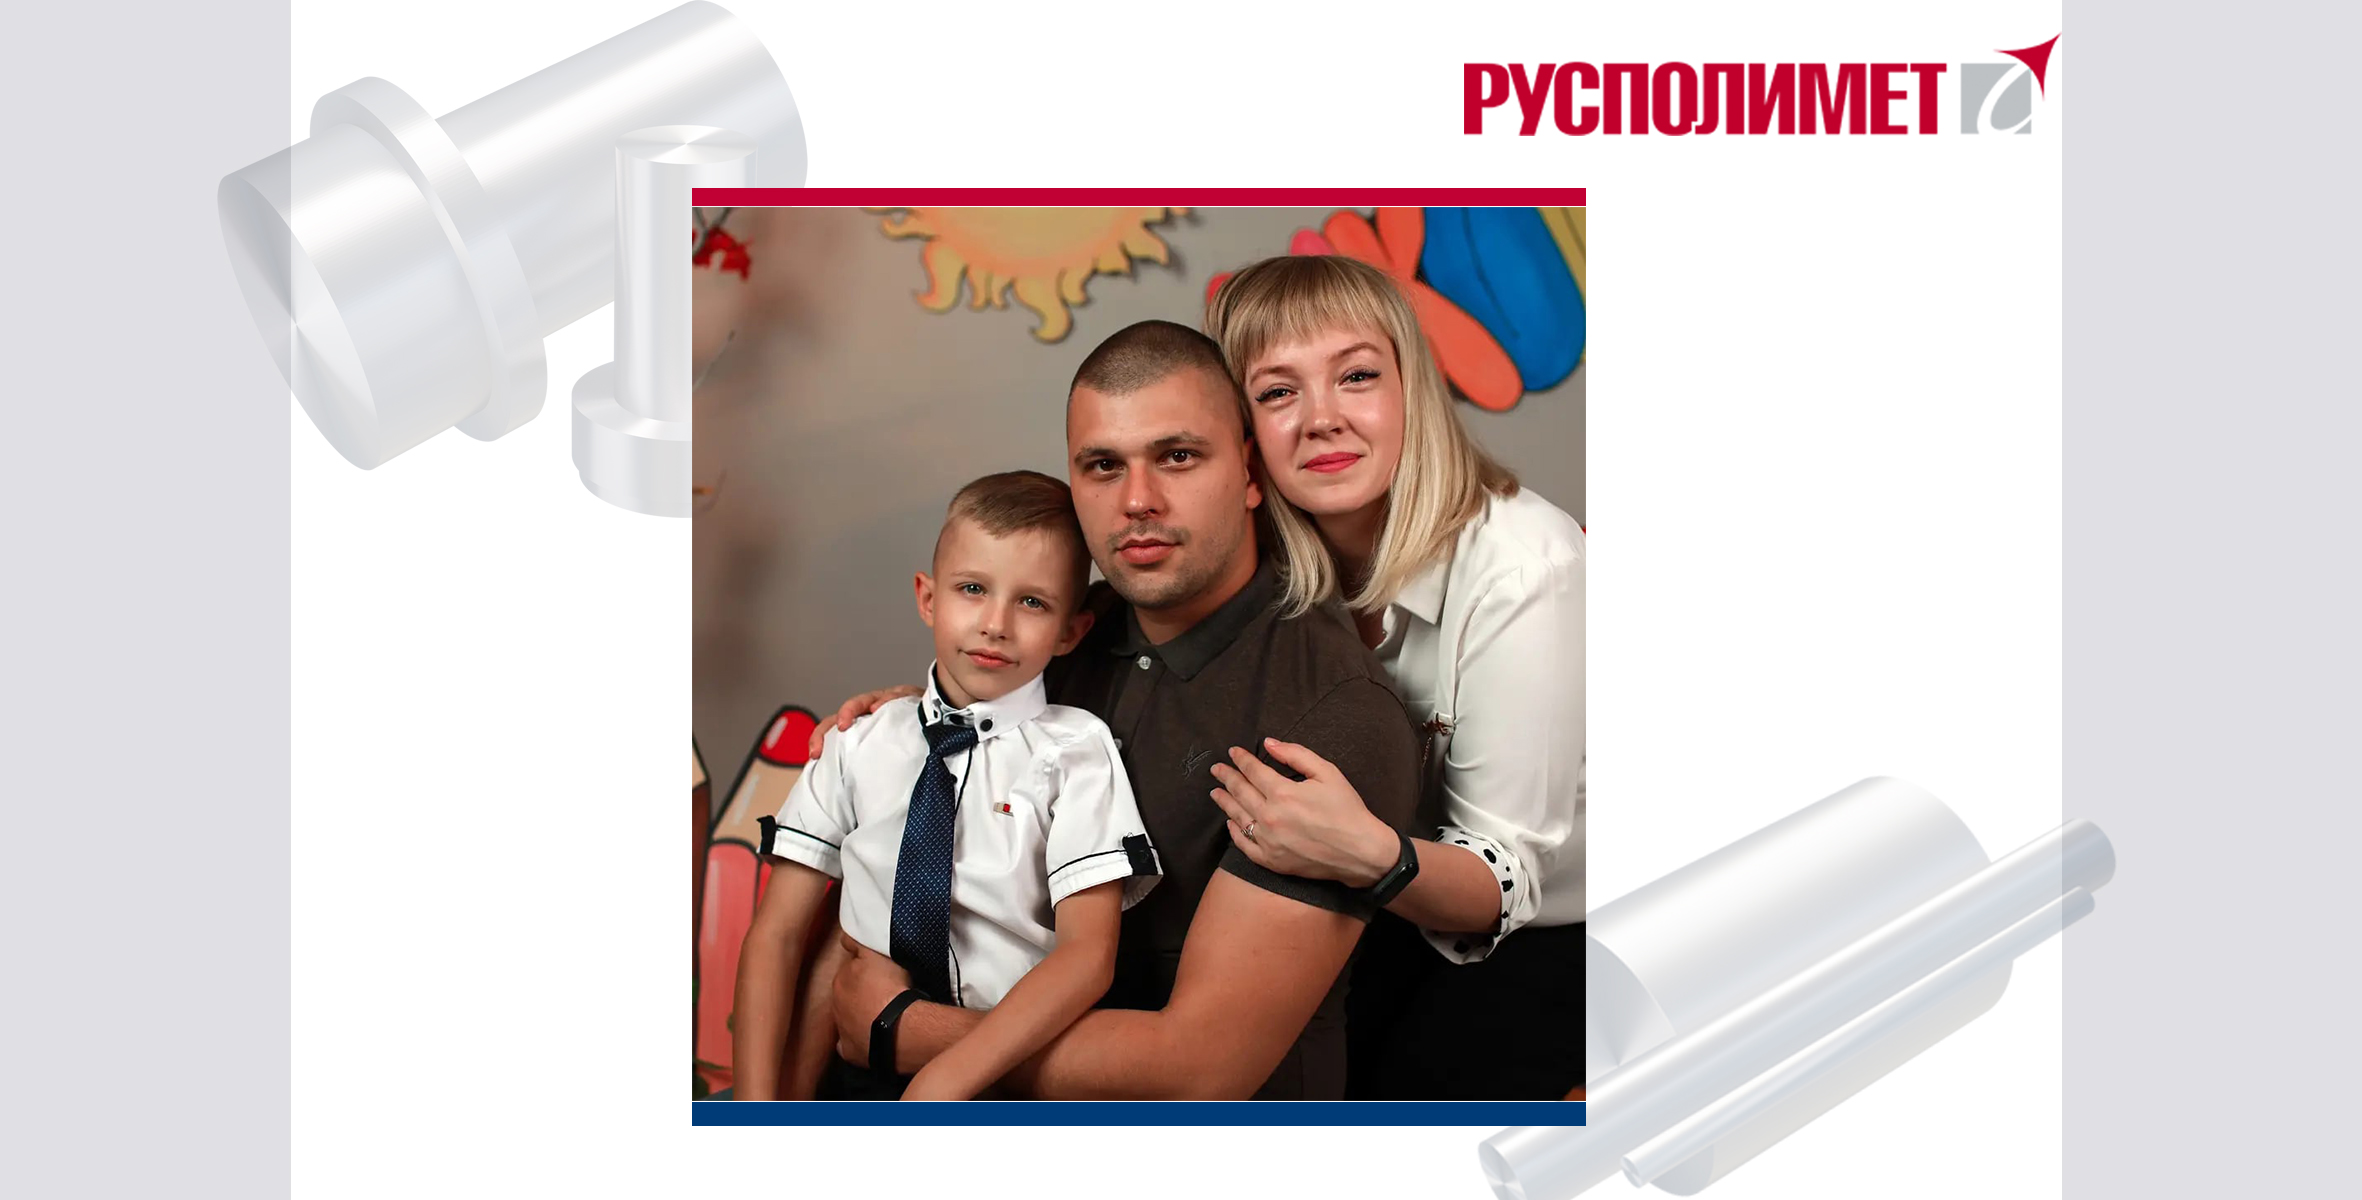 В последнее время в Русполимет особое внимание уделяется нематериальной поддержке сотрудников и их детей.